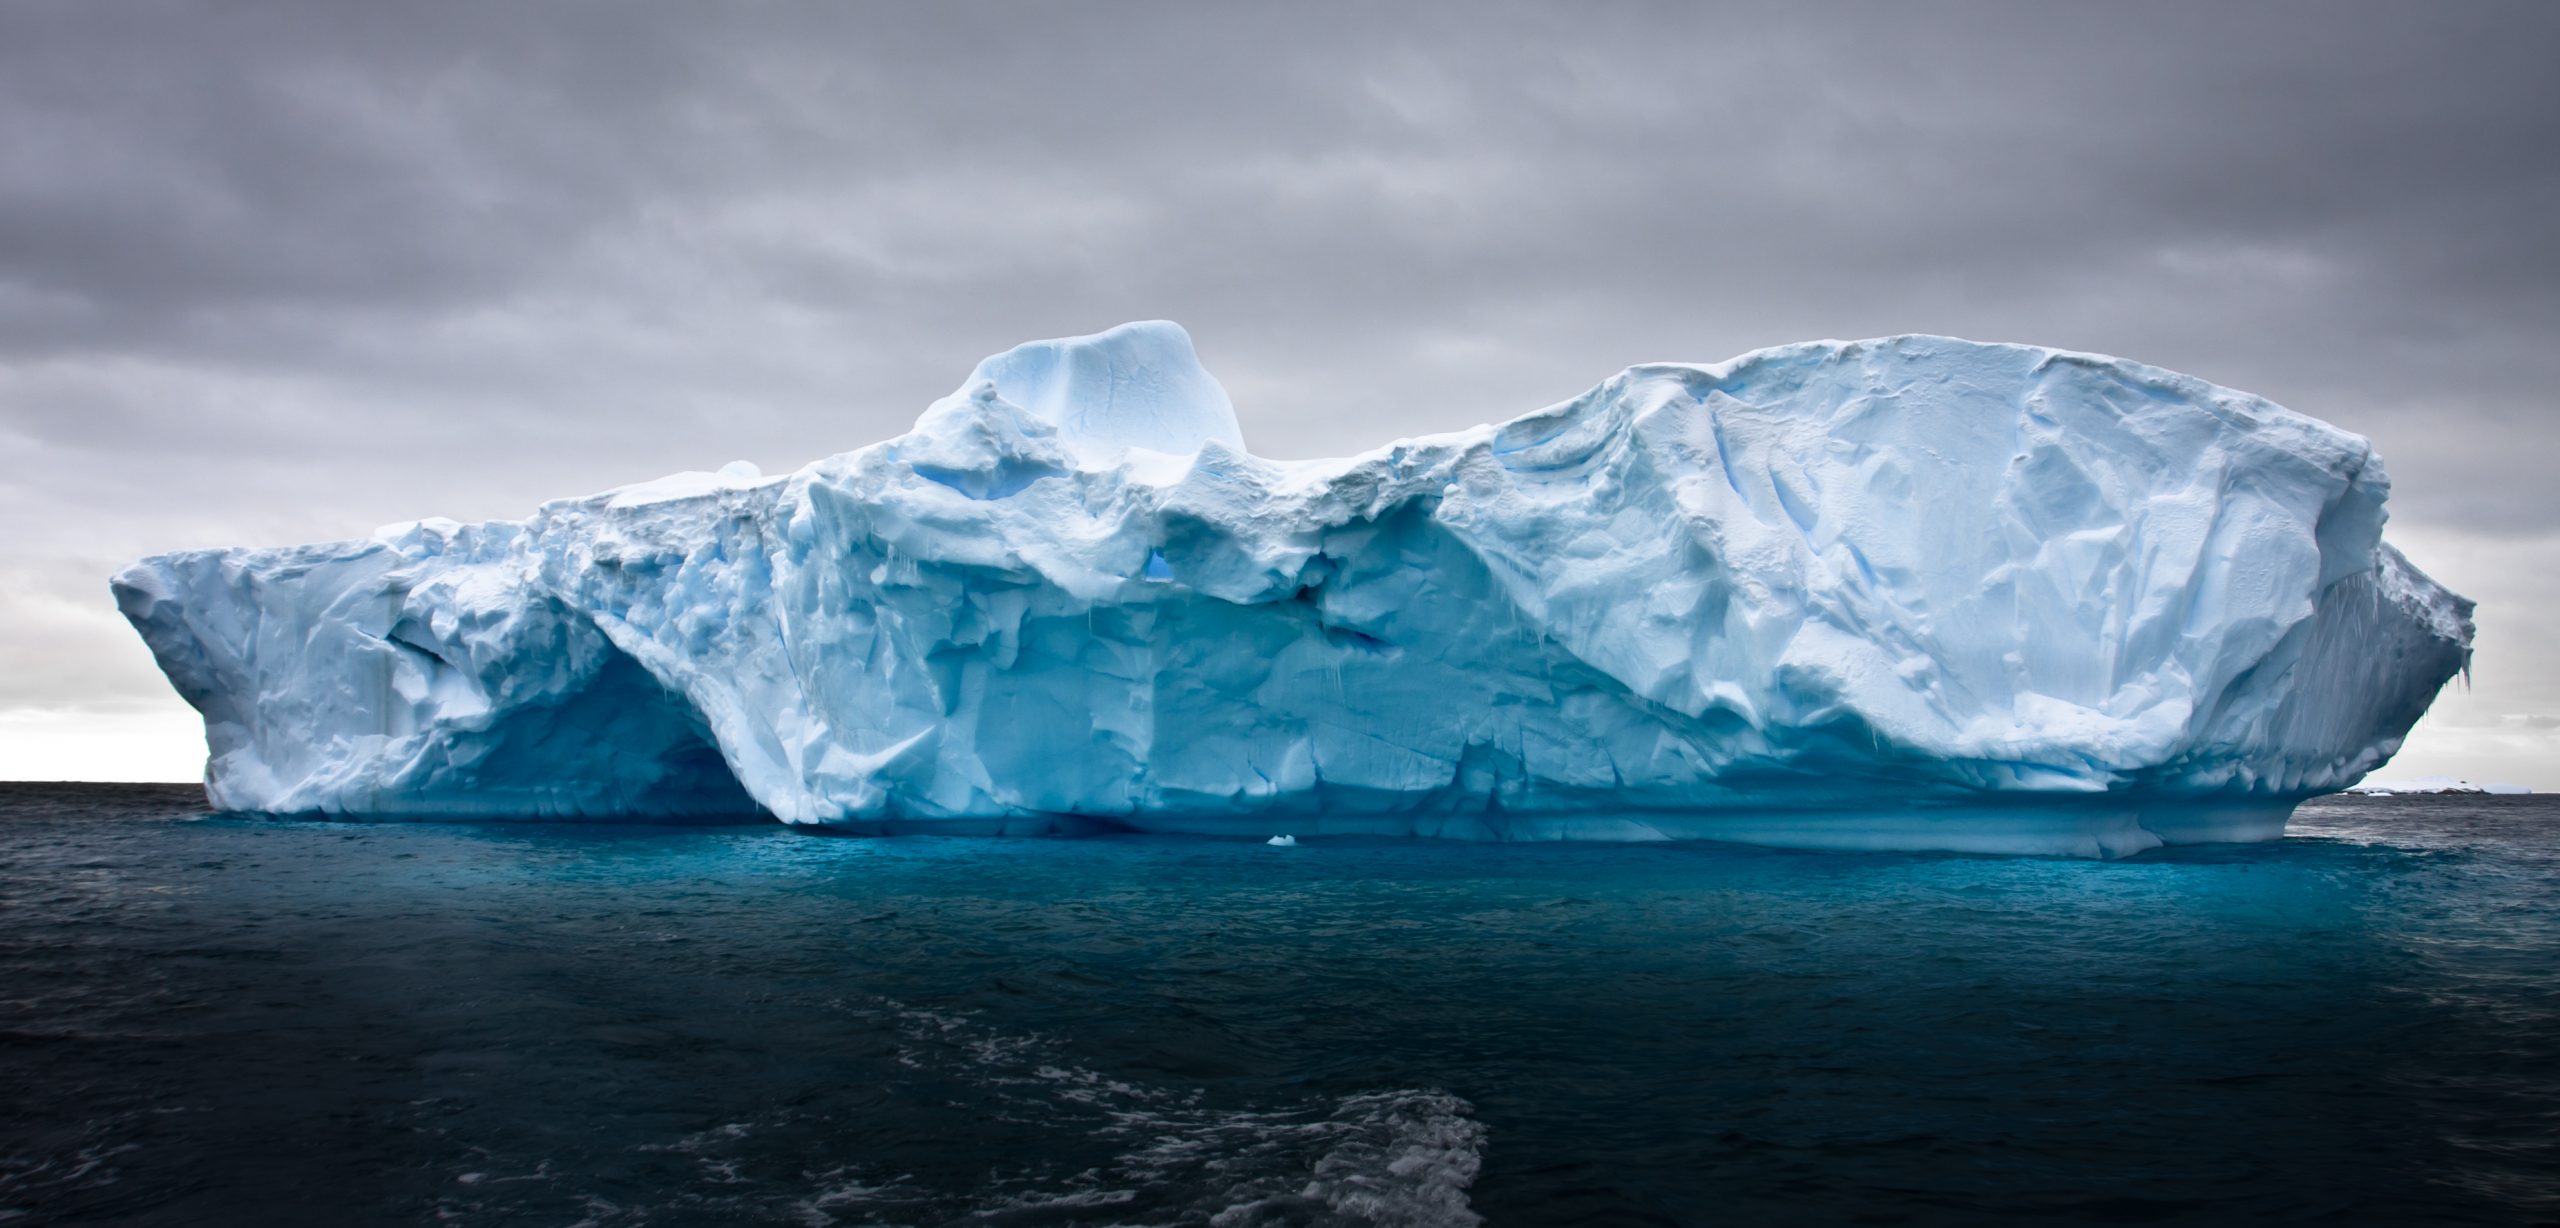 A photograph of an iceberg in Antarctica. Depositphotos.